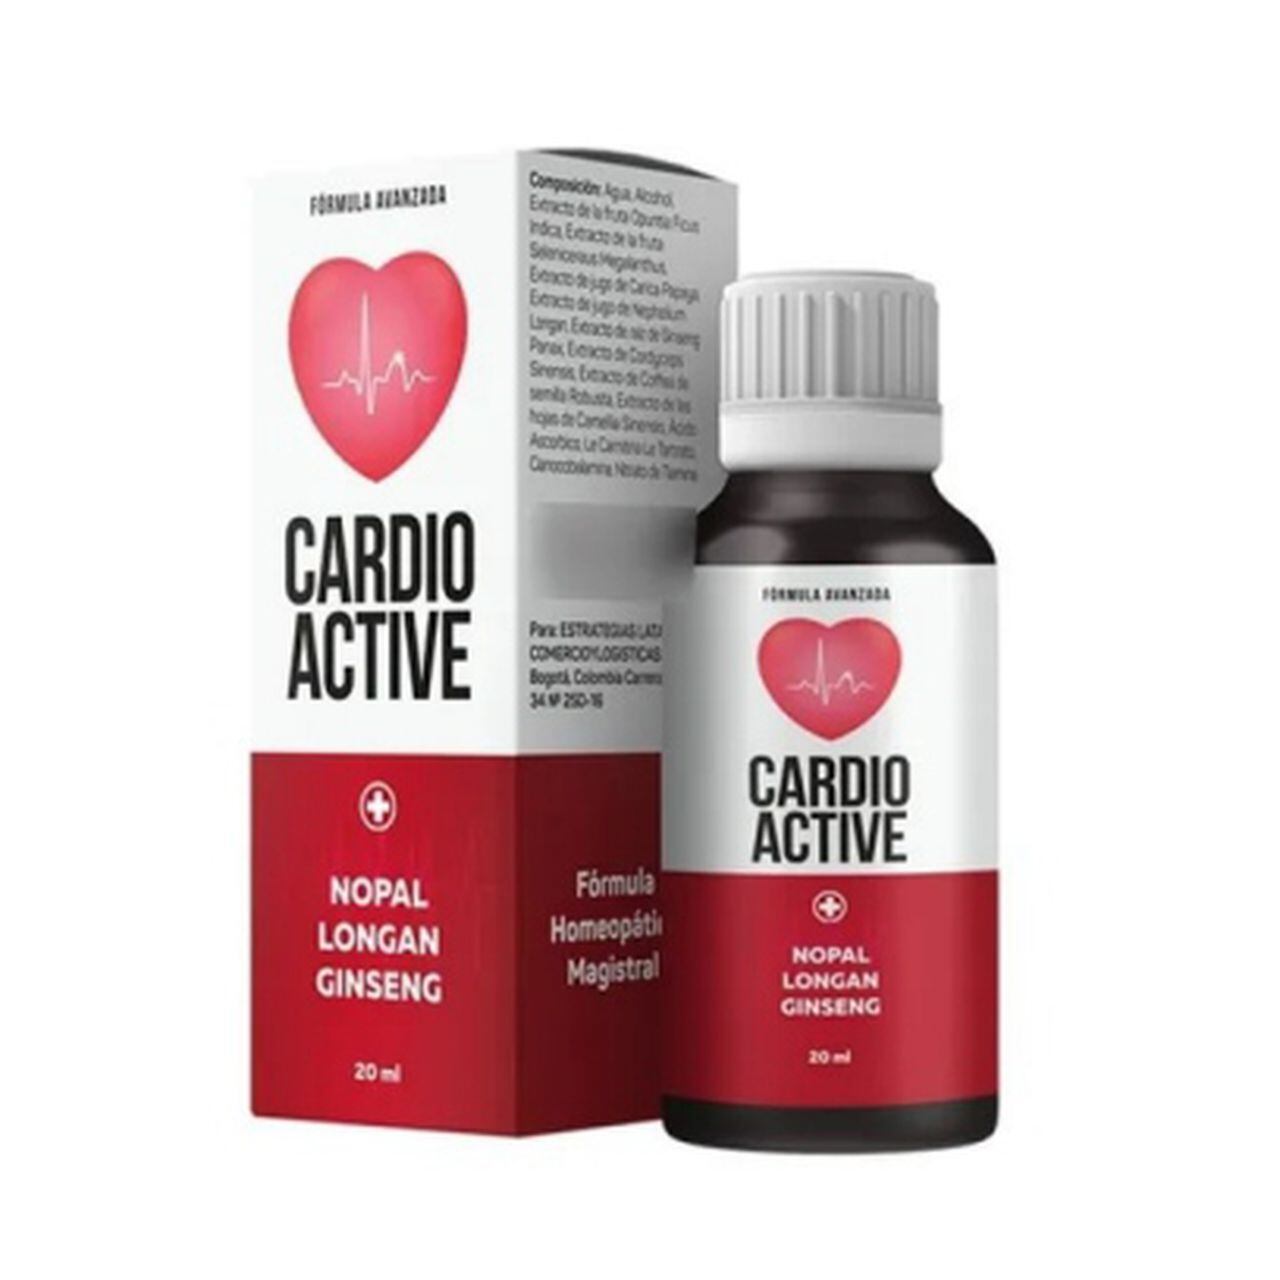 Cardioactive - gdje kupiti - u ljekarna - na Amazon - web mjestu proizvođača - u DM